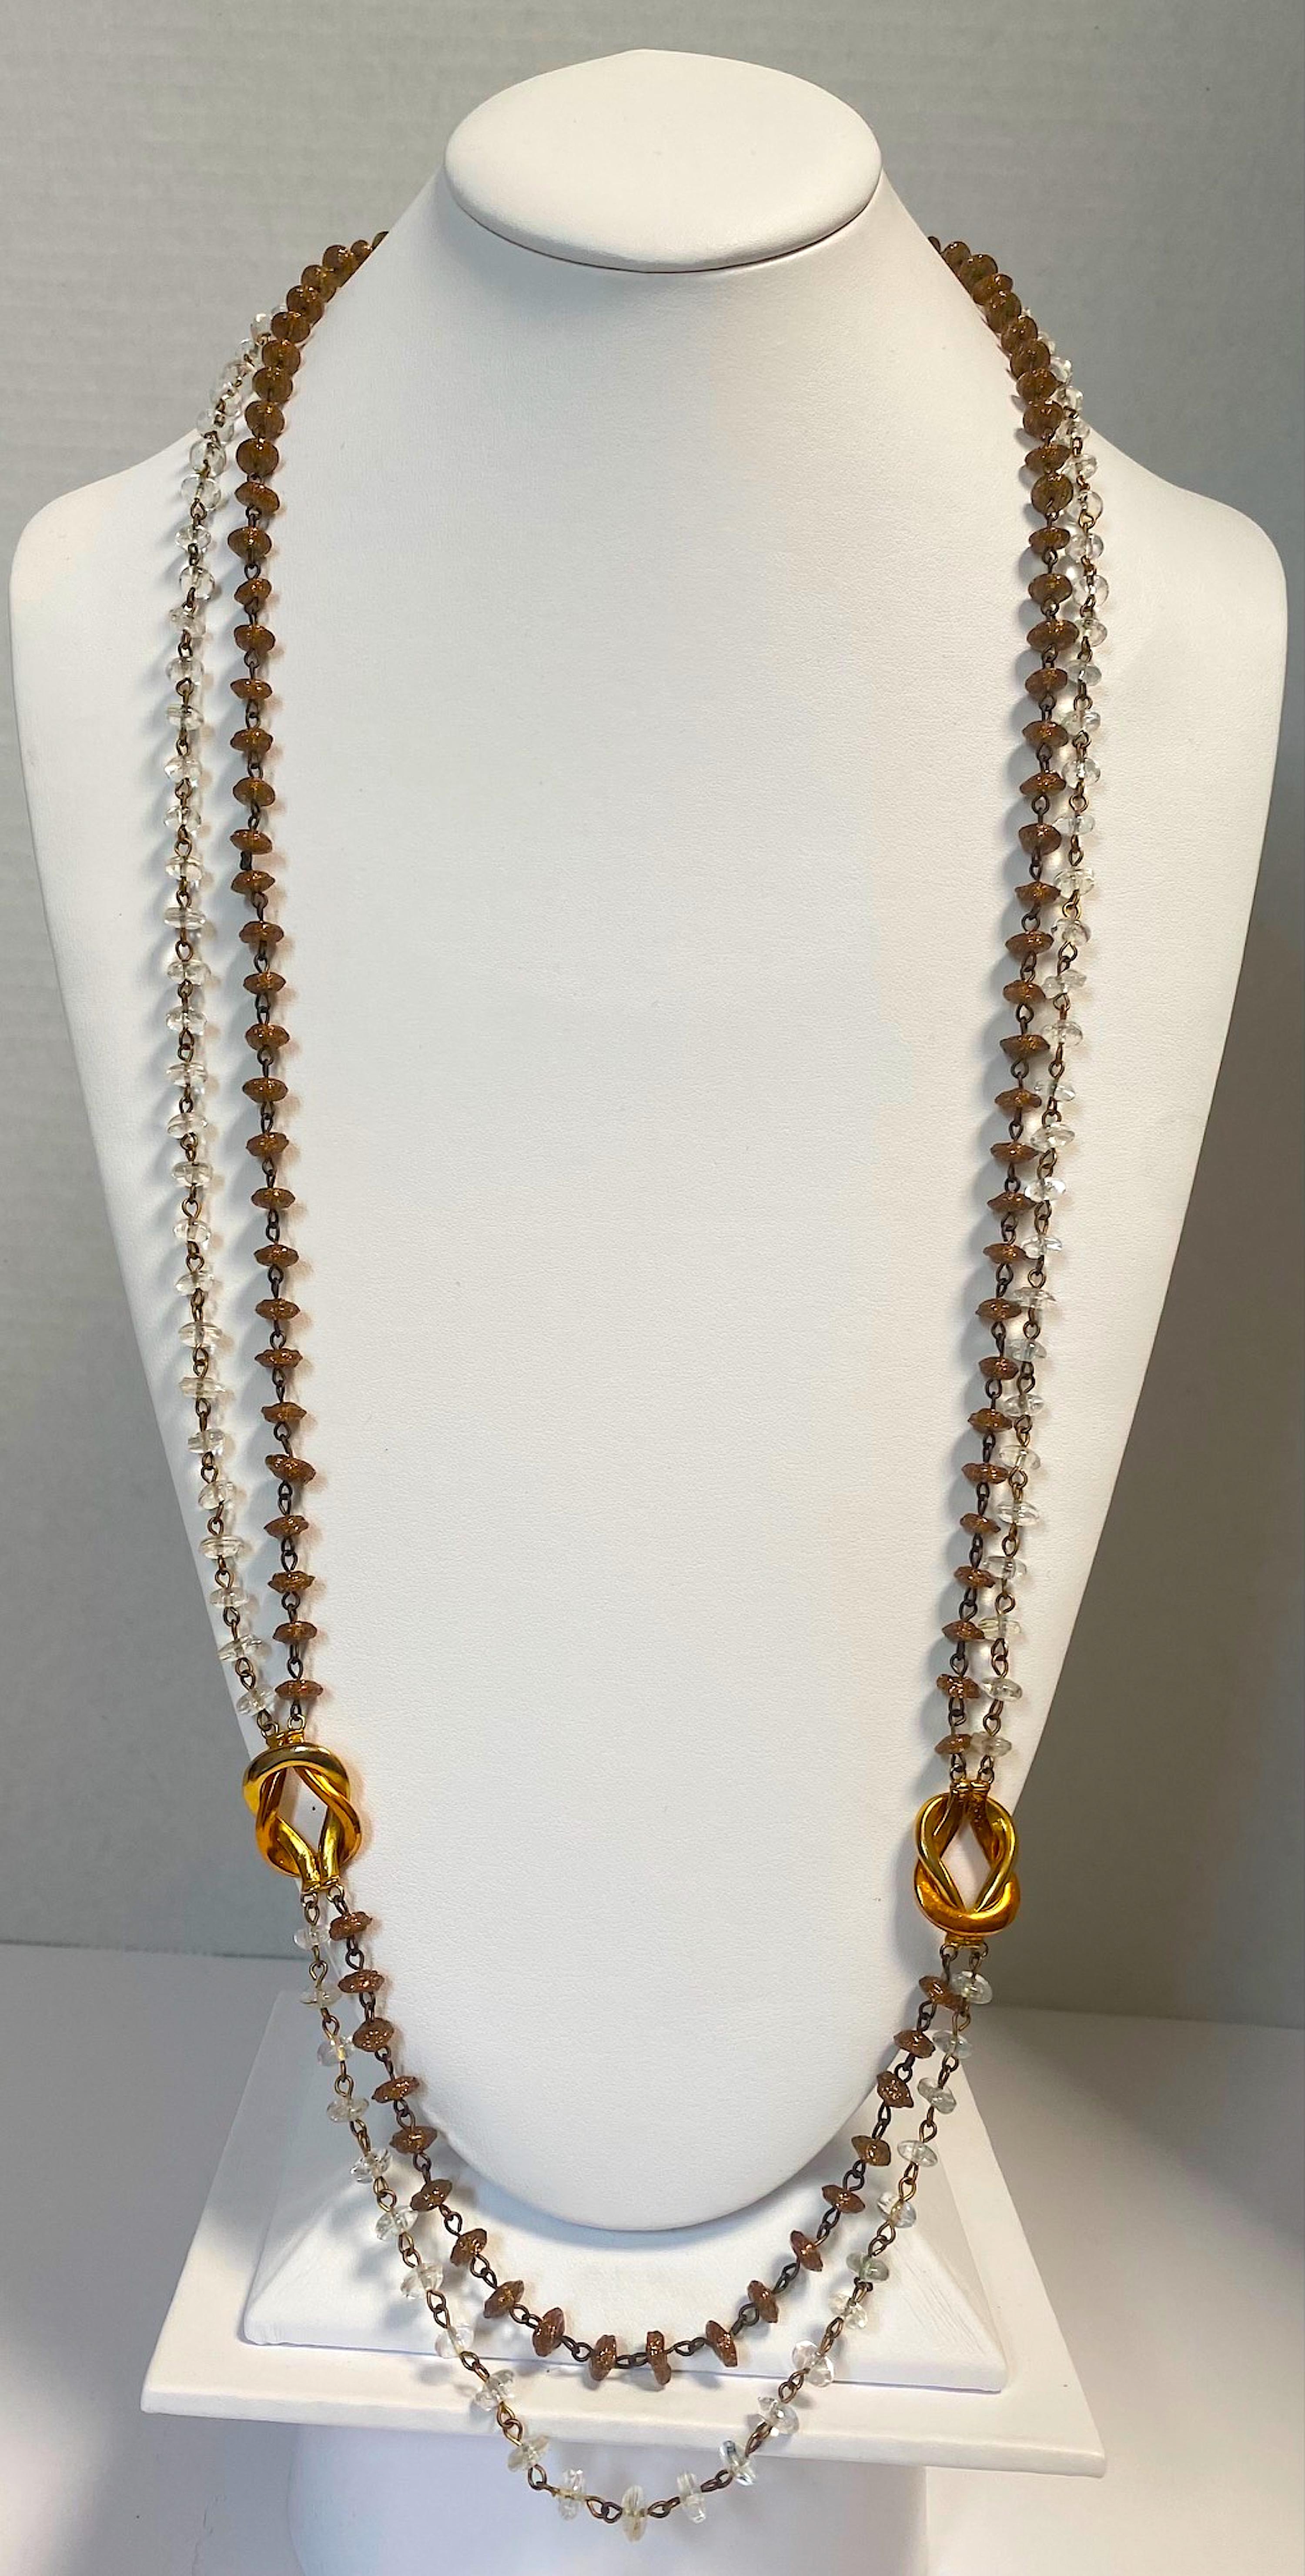 Un magnifique et rare collier de perles de verre design de la célèbre maison italienne Seguso. Les deux supports sont composés de petites perles en forme de disque fabriquées individuellement à la main. Chaque perle est unique et de forme